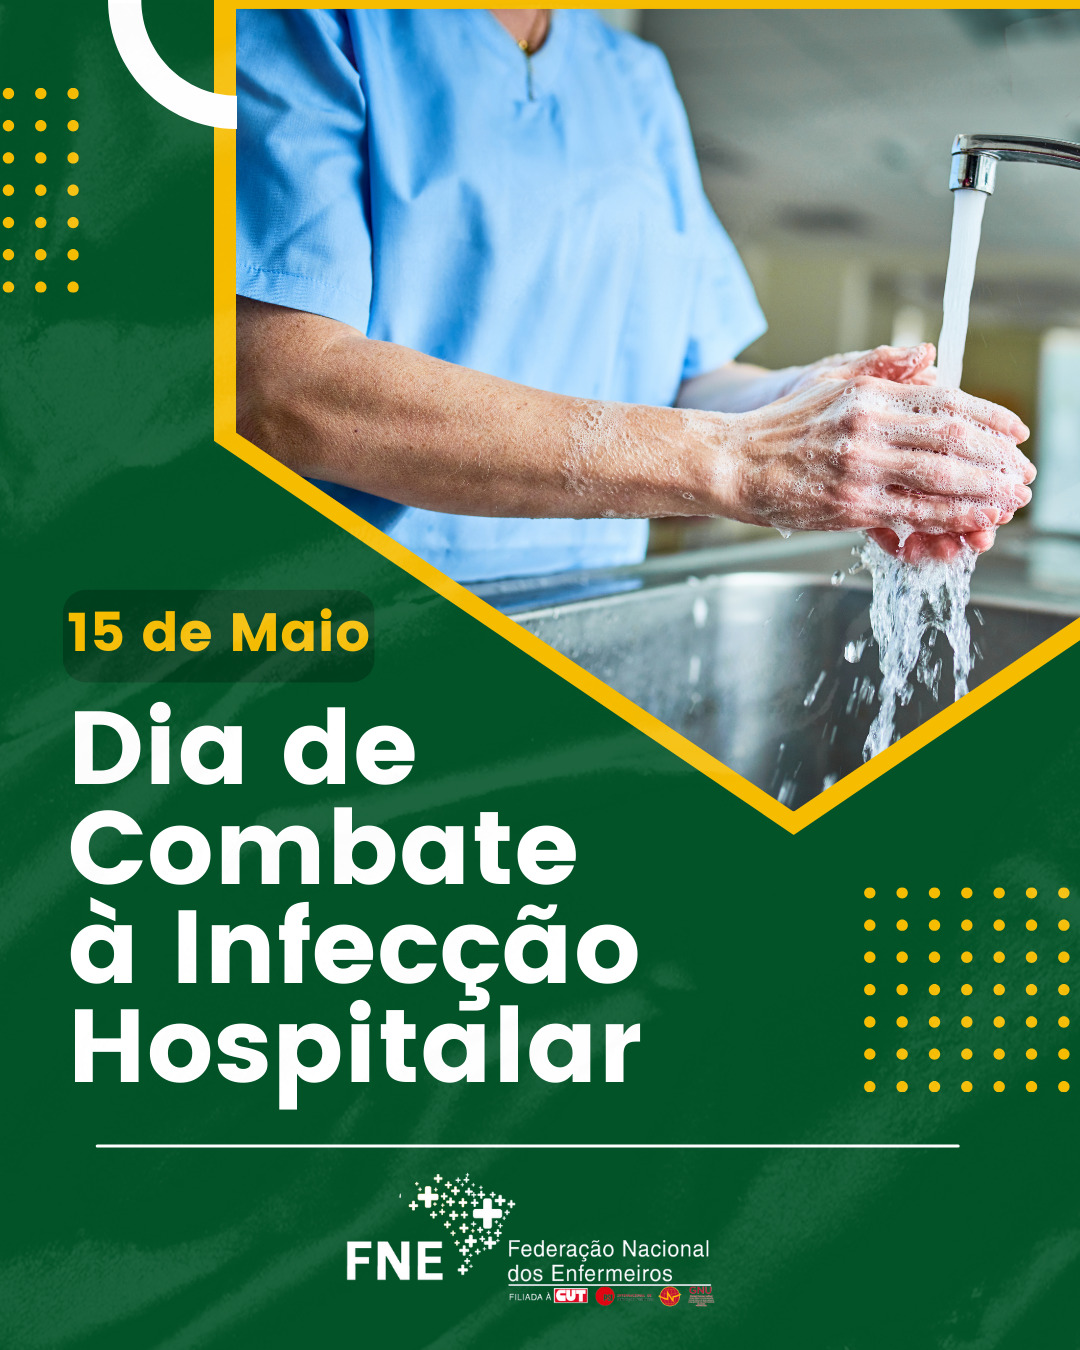 15 de maio - Dia de Combate à Infecção Hospitalar